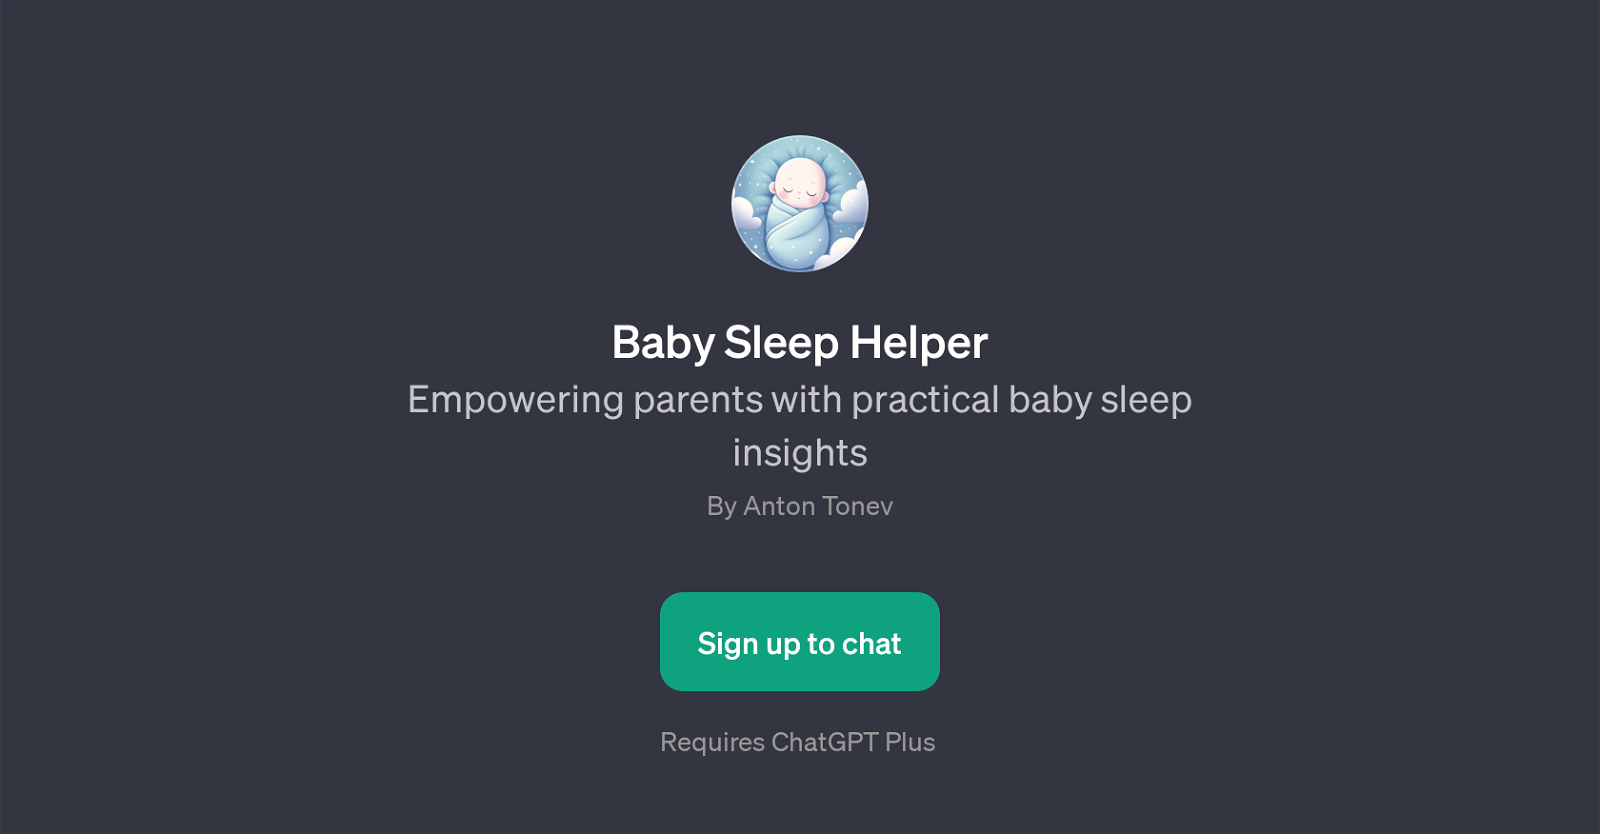 Baby Sleep Helper website